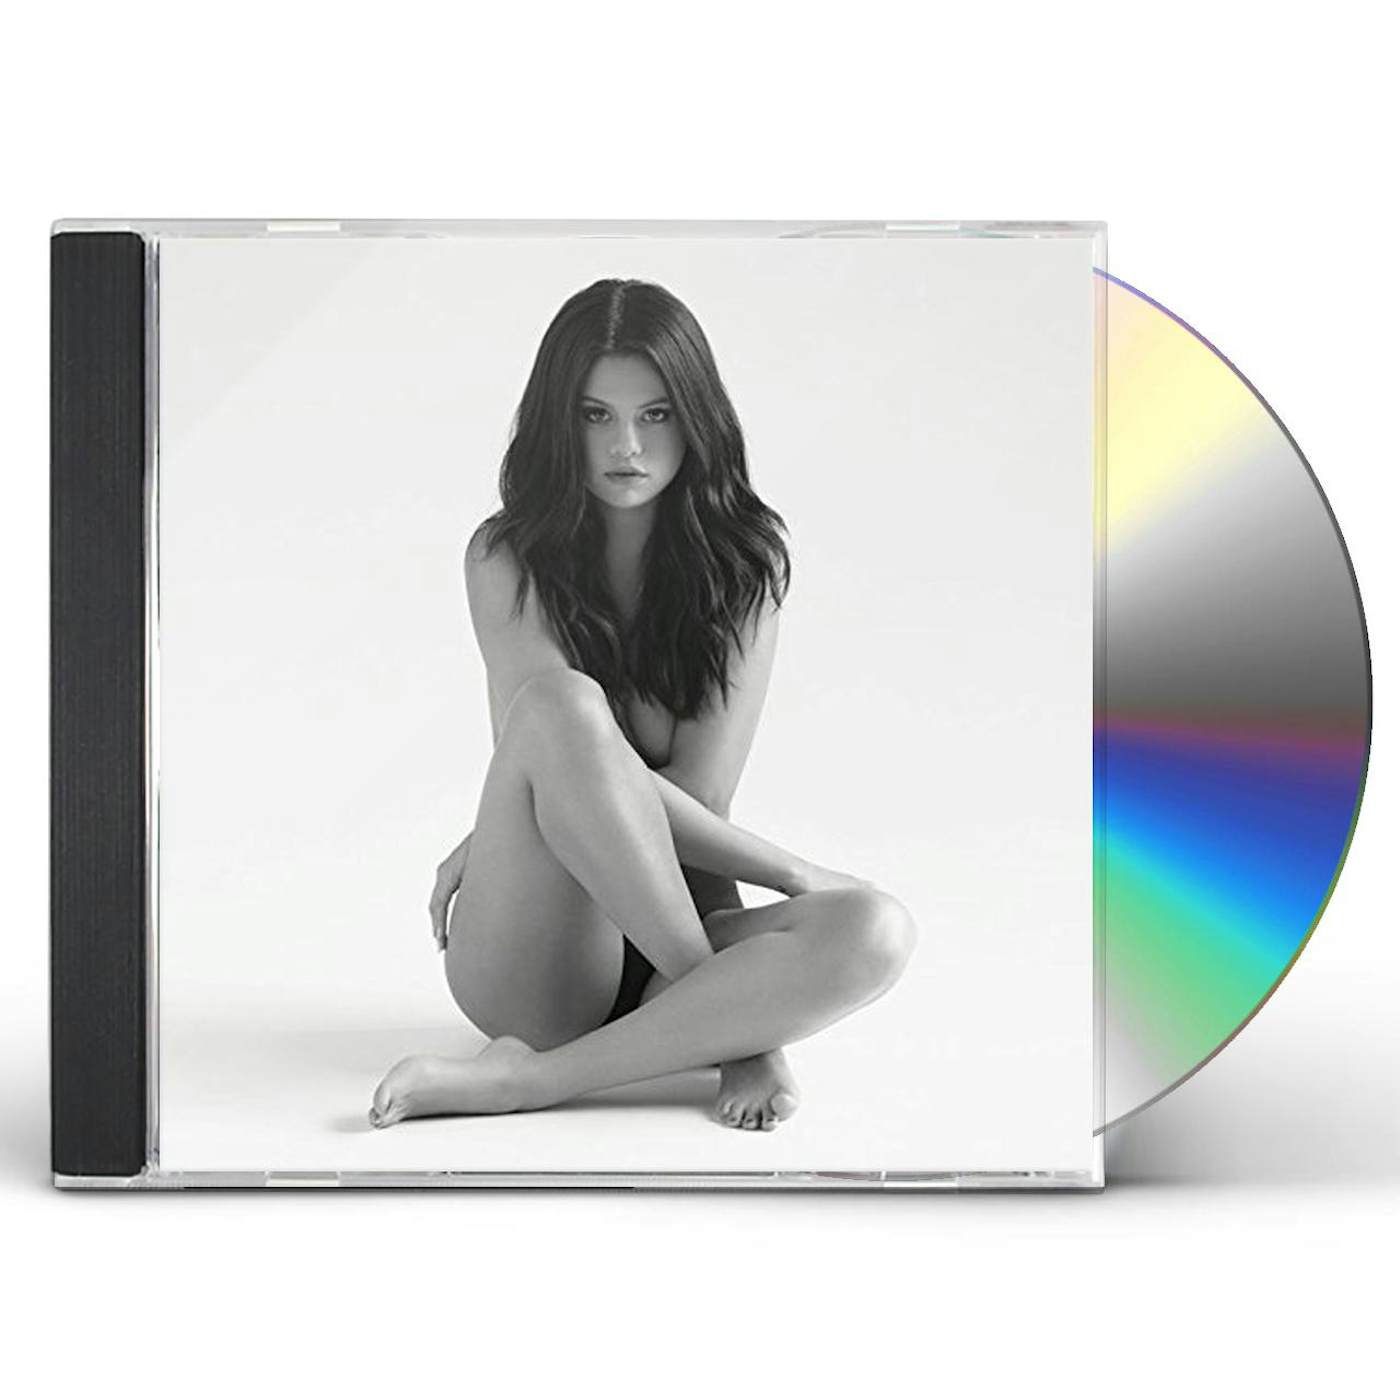 Selena Gomez REVIVAL CD